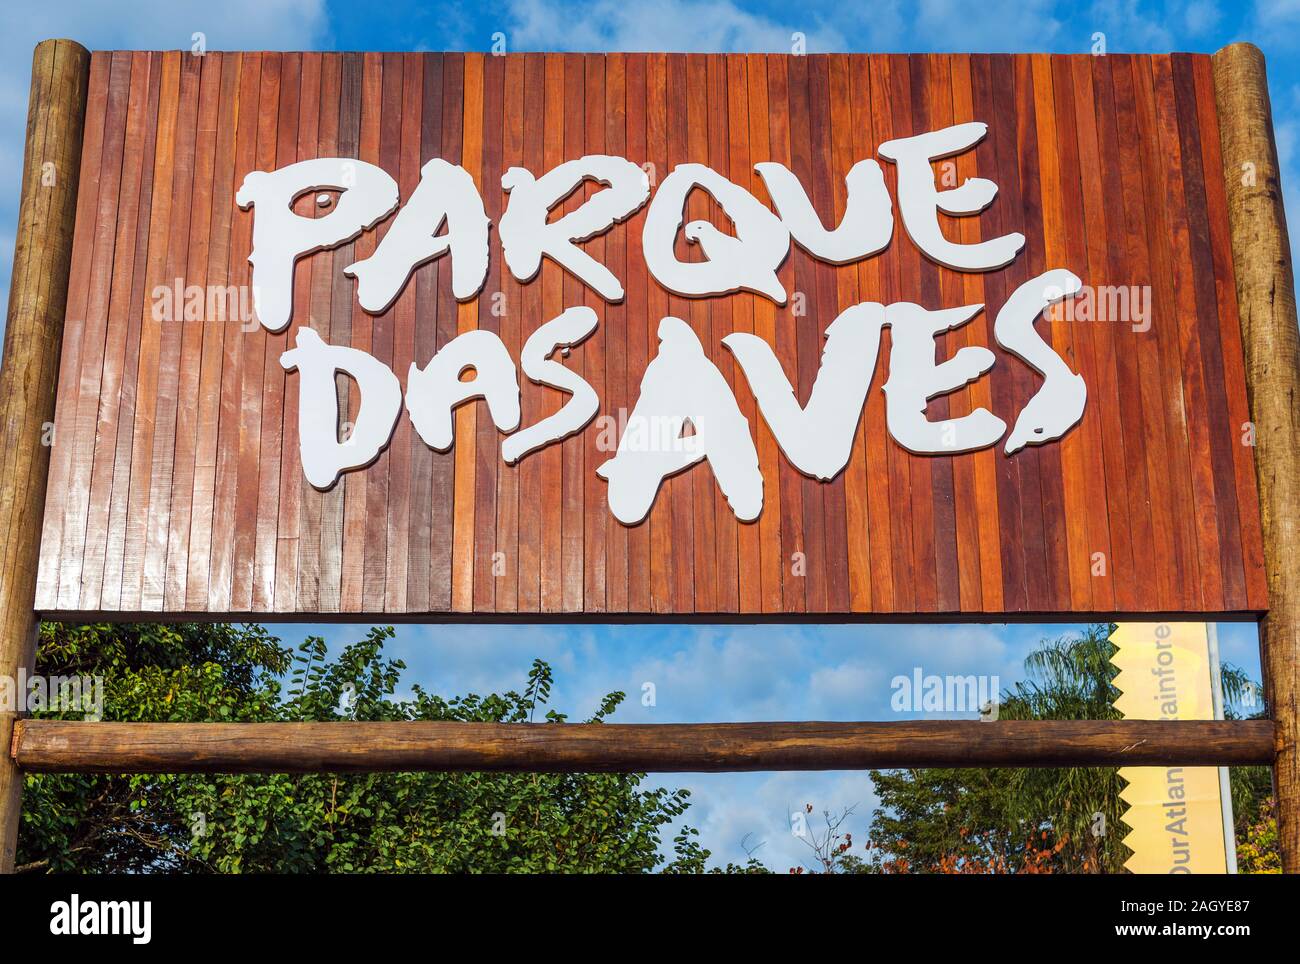 BIRD PARK IGUAZU, Brasilien - 22. JUNI 2019: Hölzernes Schild mit der Aufschrift "Parque das Aves". Close-up Stockfoto